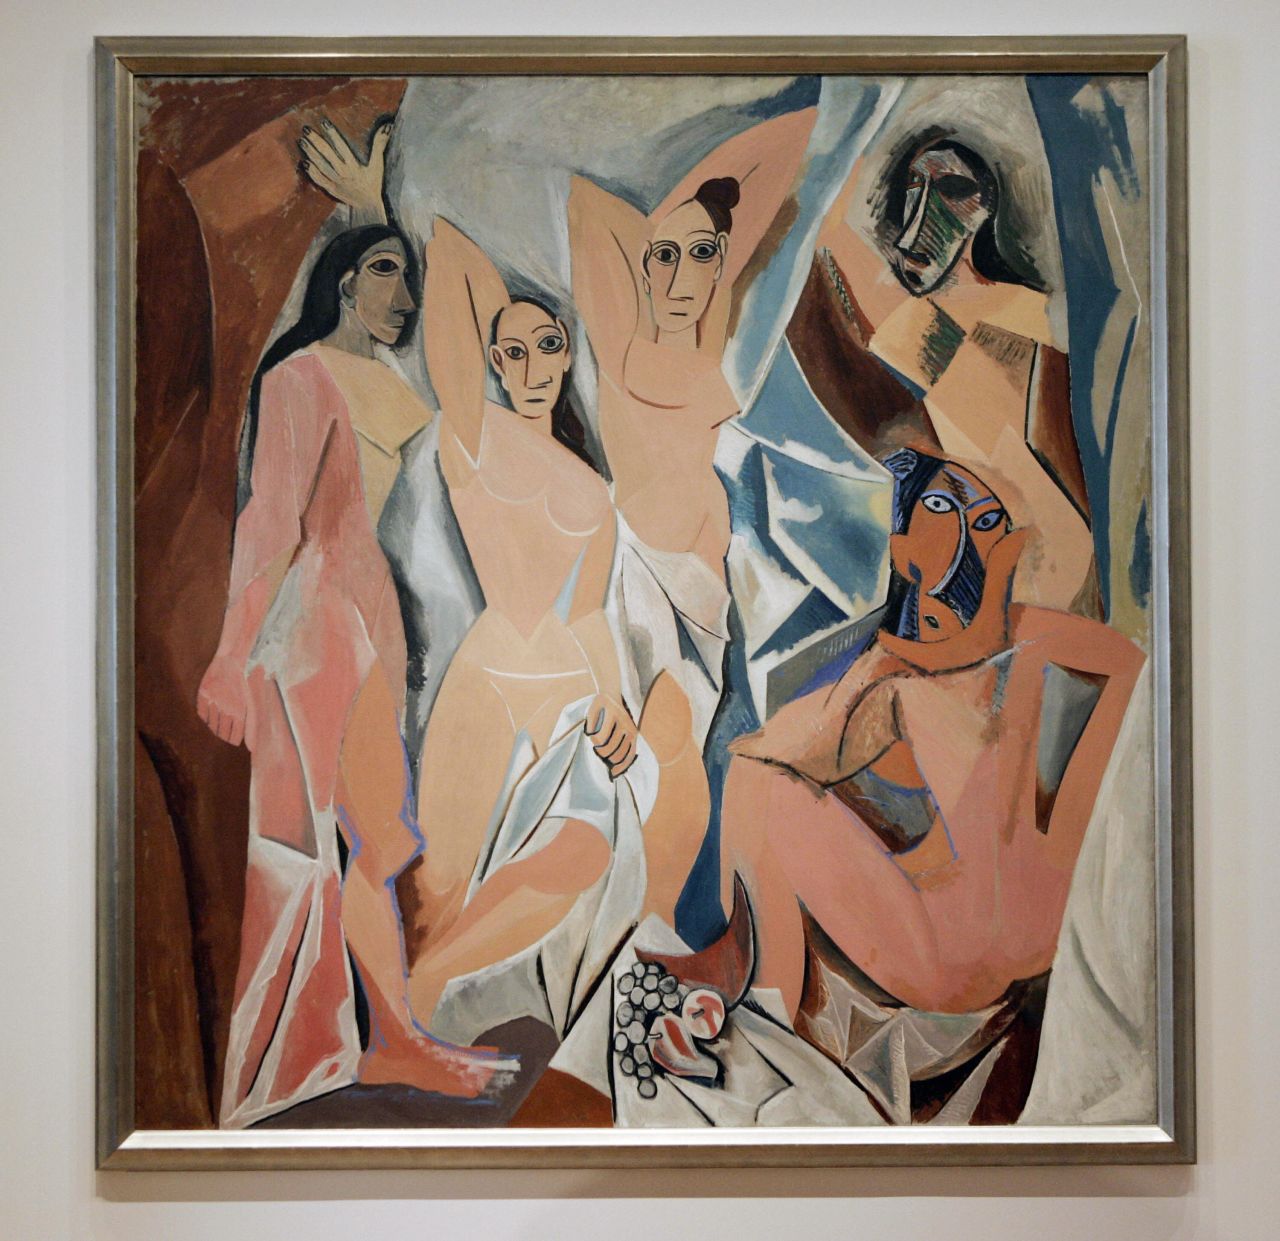 Pablo Picasso's "Les Demoiselles d'Avignon" (1907) depicts five naked prostitutes. 